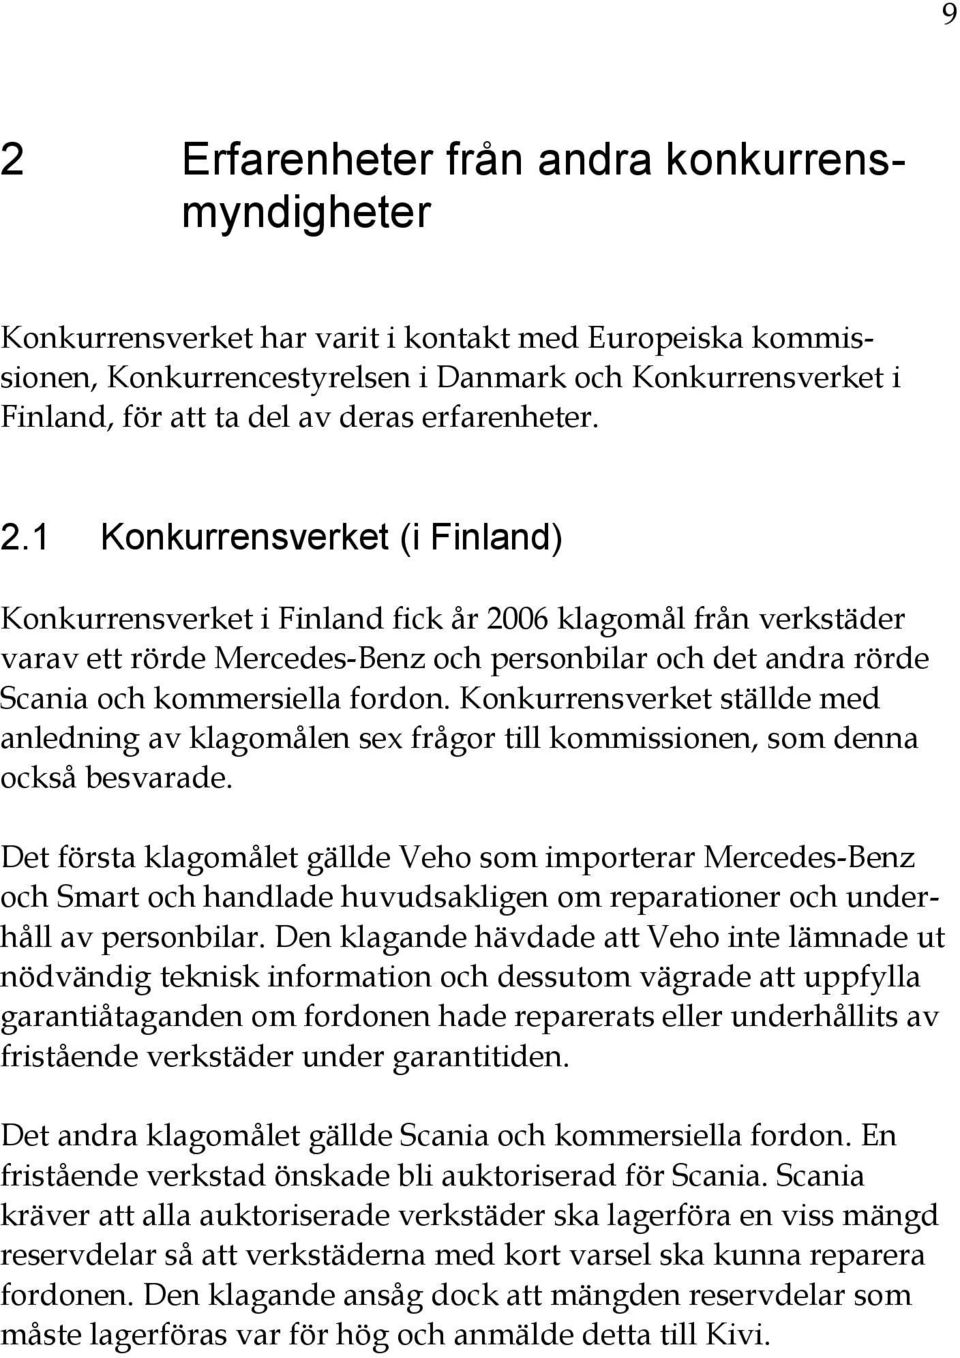 1 Konkurrensverket (i Finland) Konkurrensverket i Finland fick år 2006 klagomål från verkstäder varav ett rörde Mercedes-Benz och personbilar och det andra rörde Scania och kommersiella fordon.